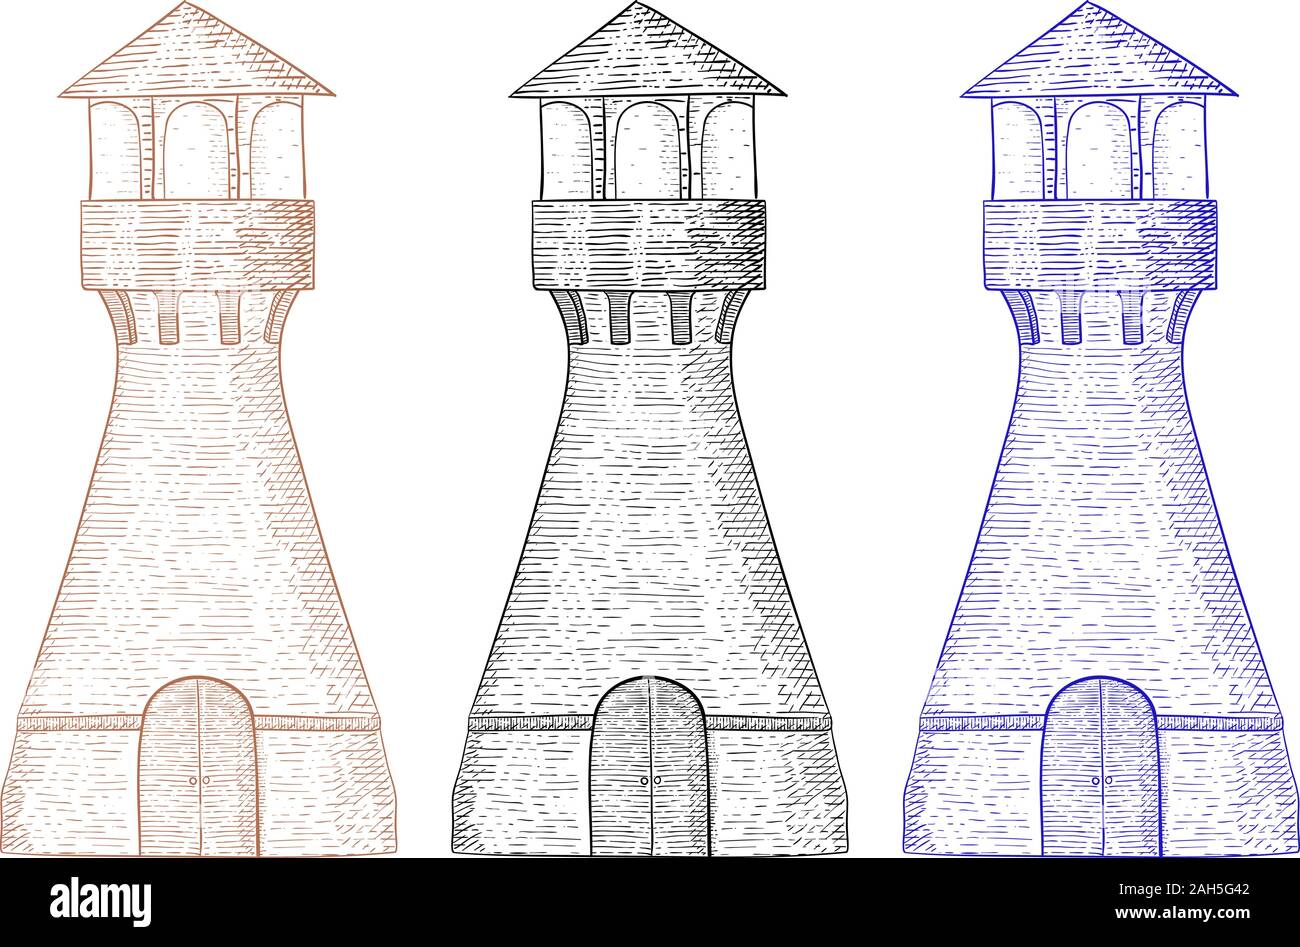 Leuchtturm. Hand gezeichnete Skizze. Vector Illustration auf weißem Hintergrund. Stock Vektor